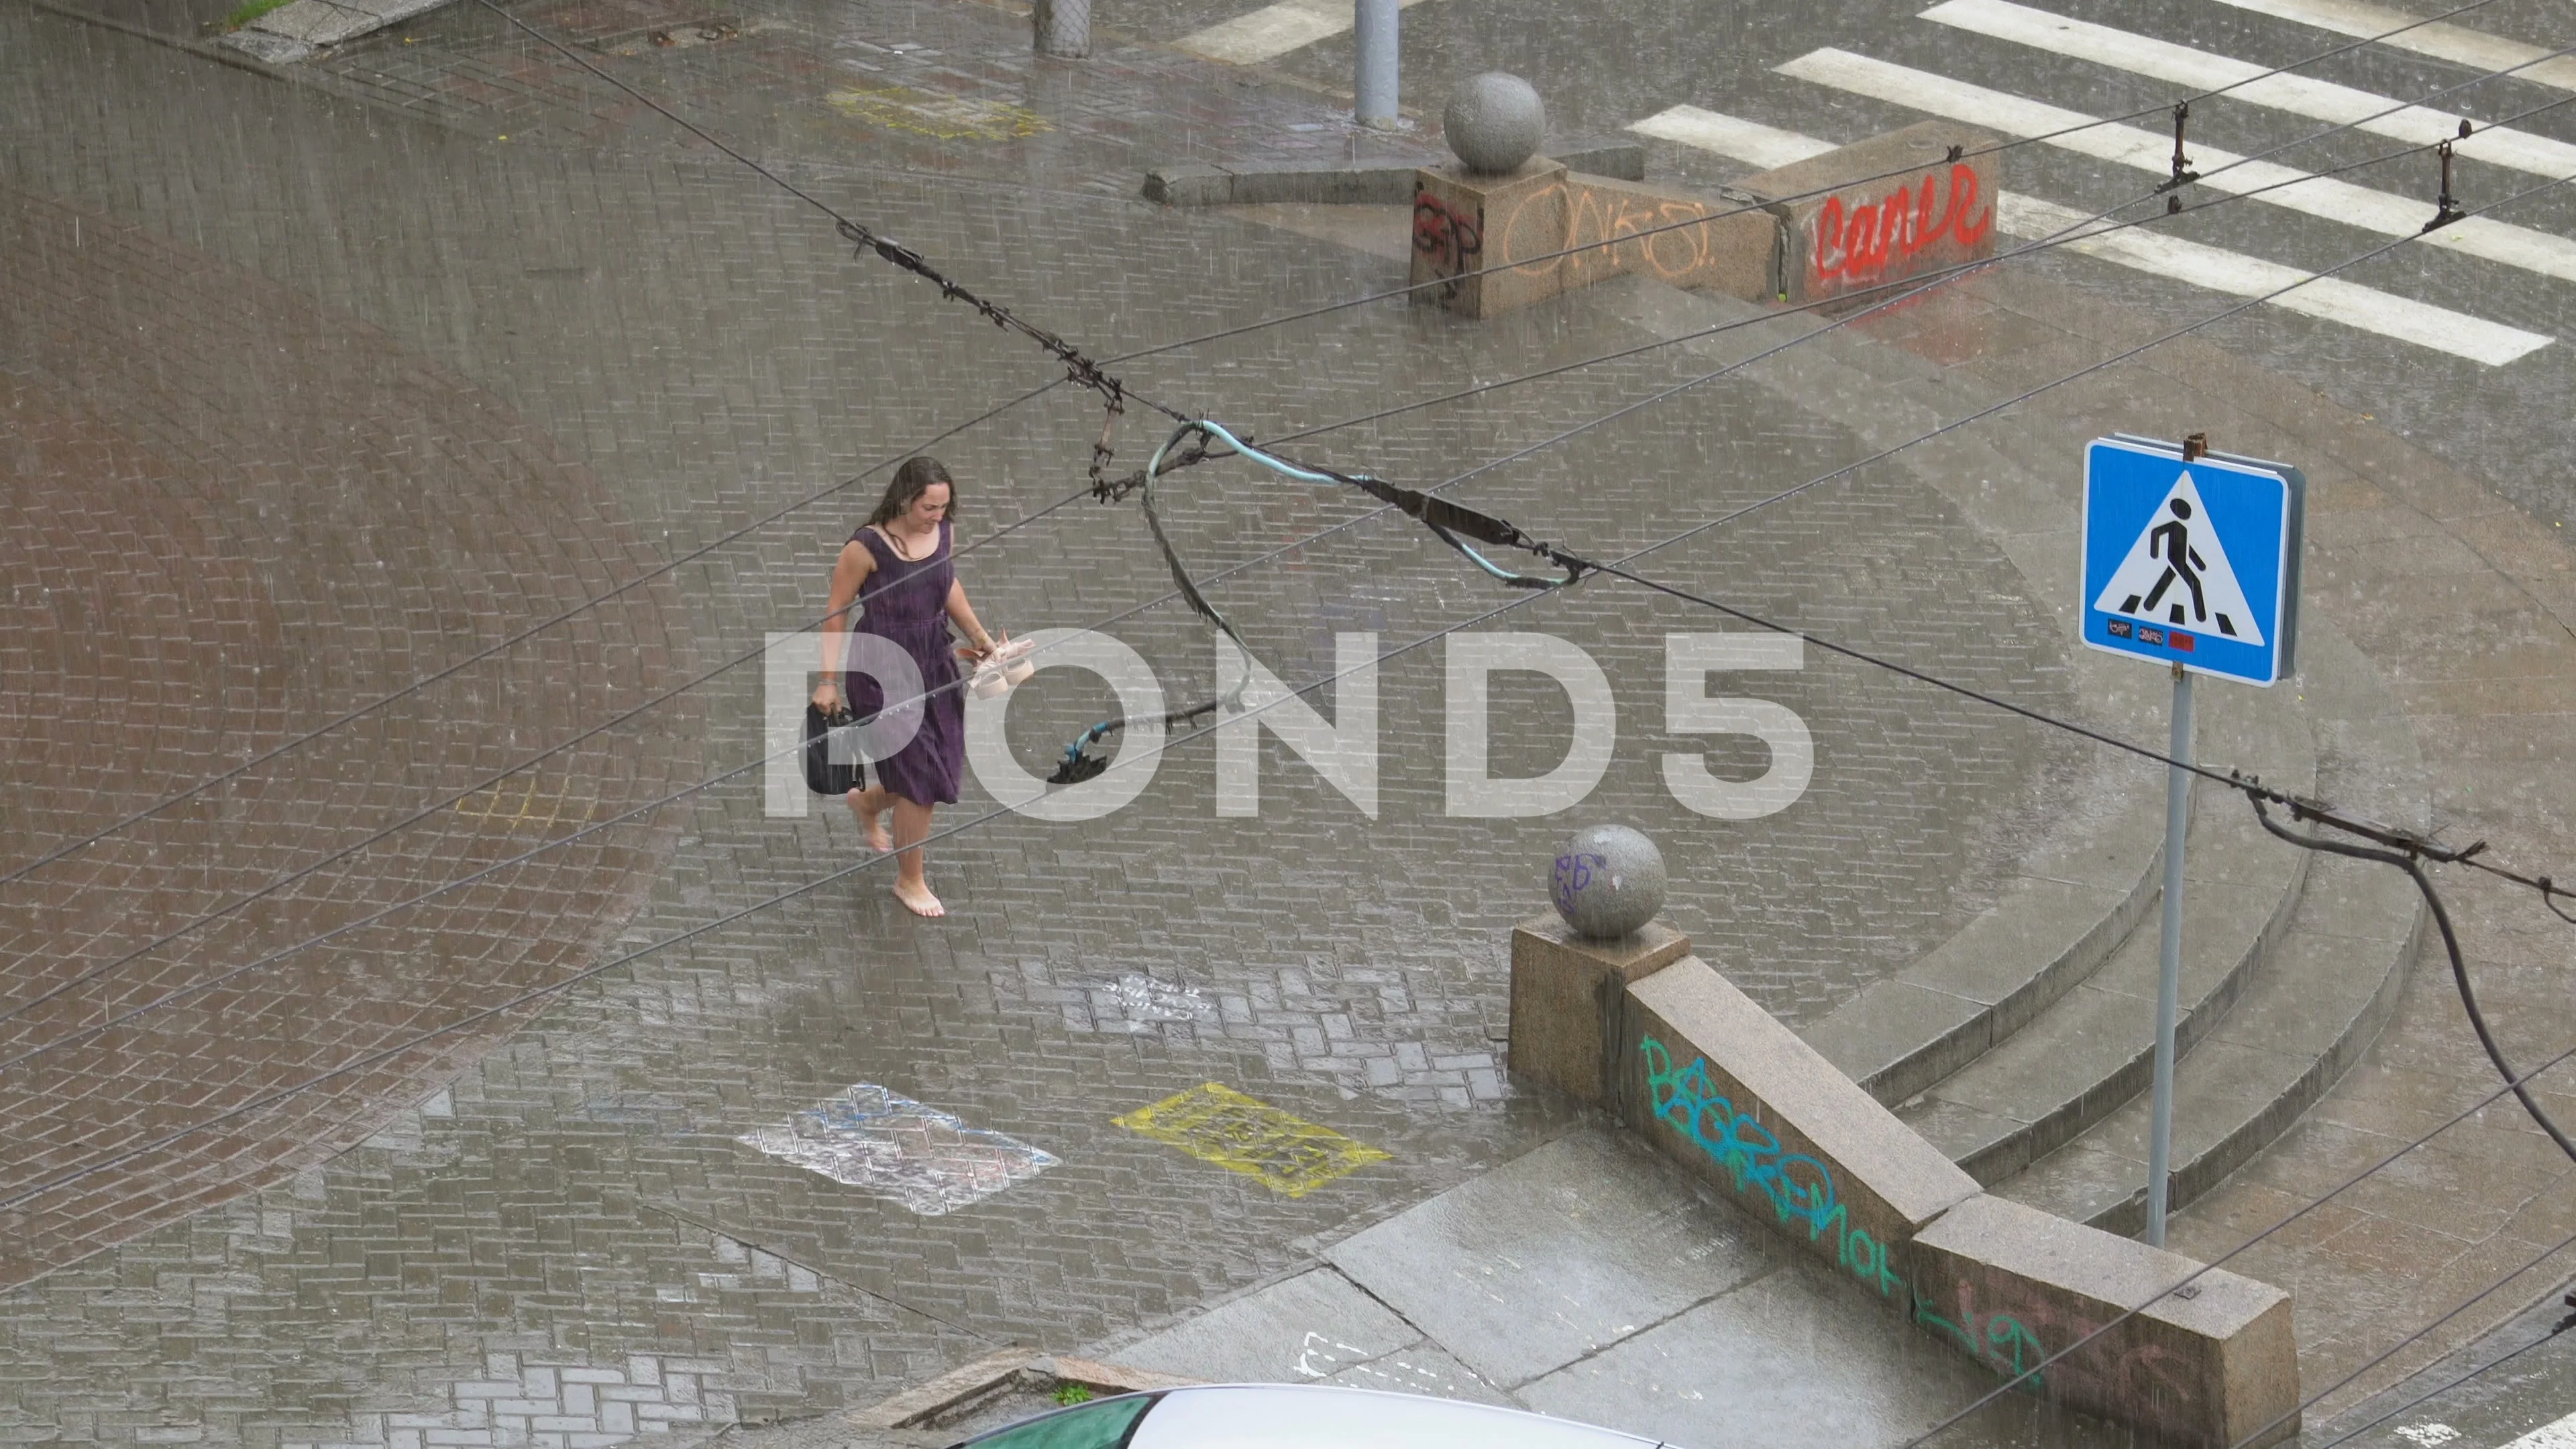 https://images.pond5.com/during-flood-girl-walk-barefoot-footage-099950020_prevstill.jpeg